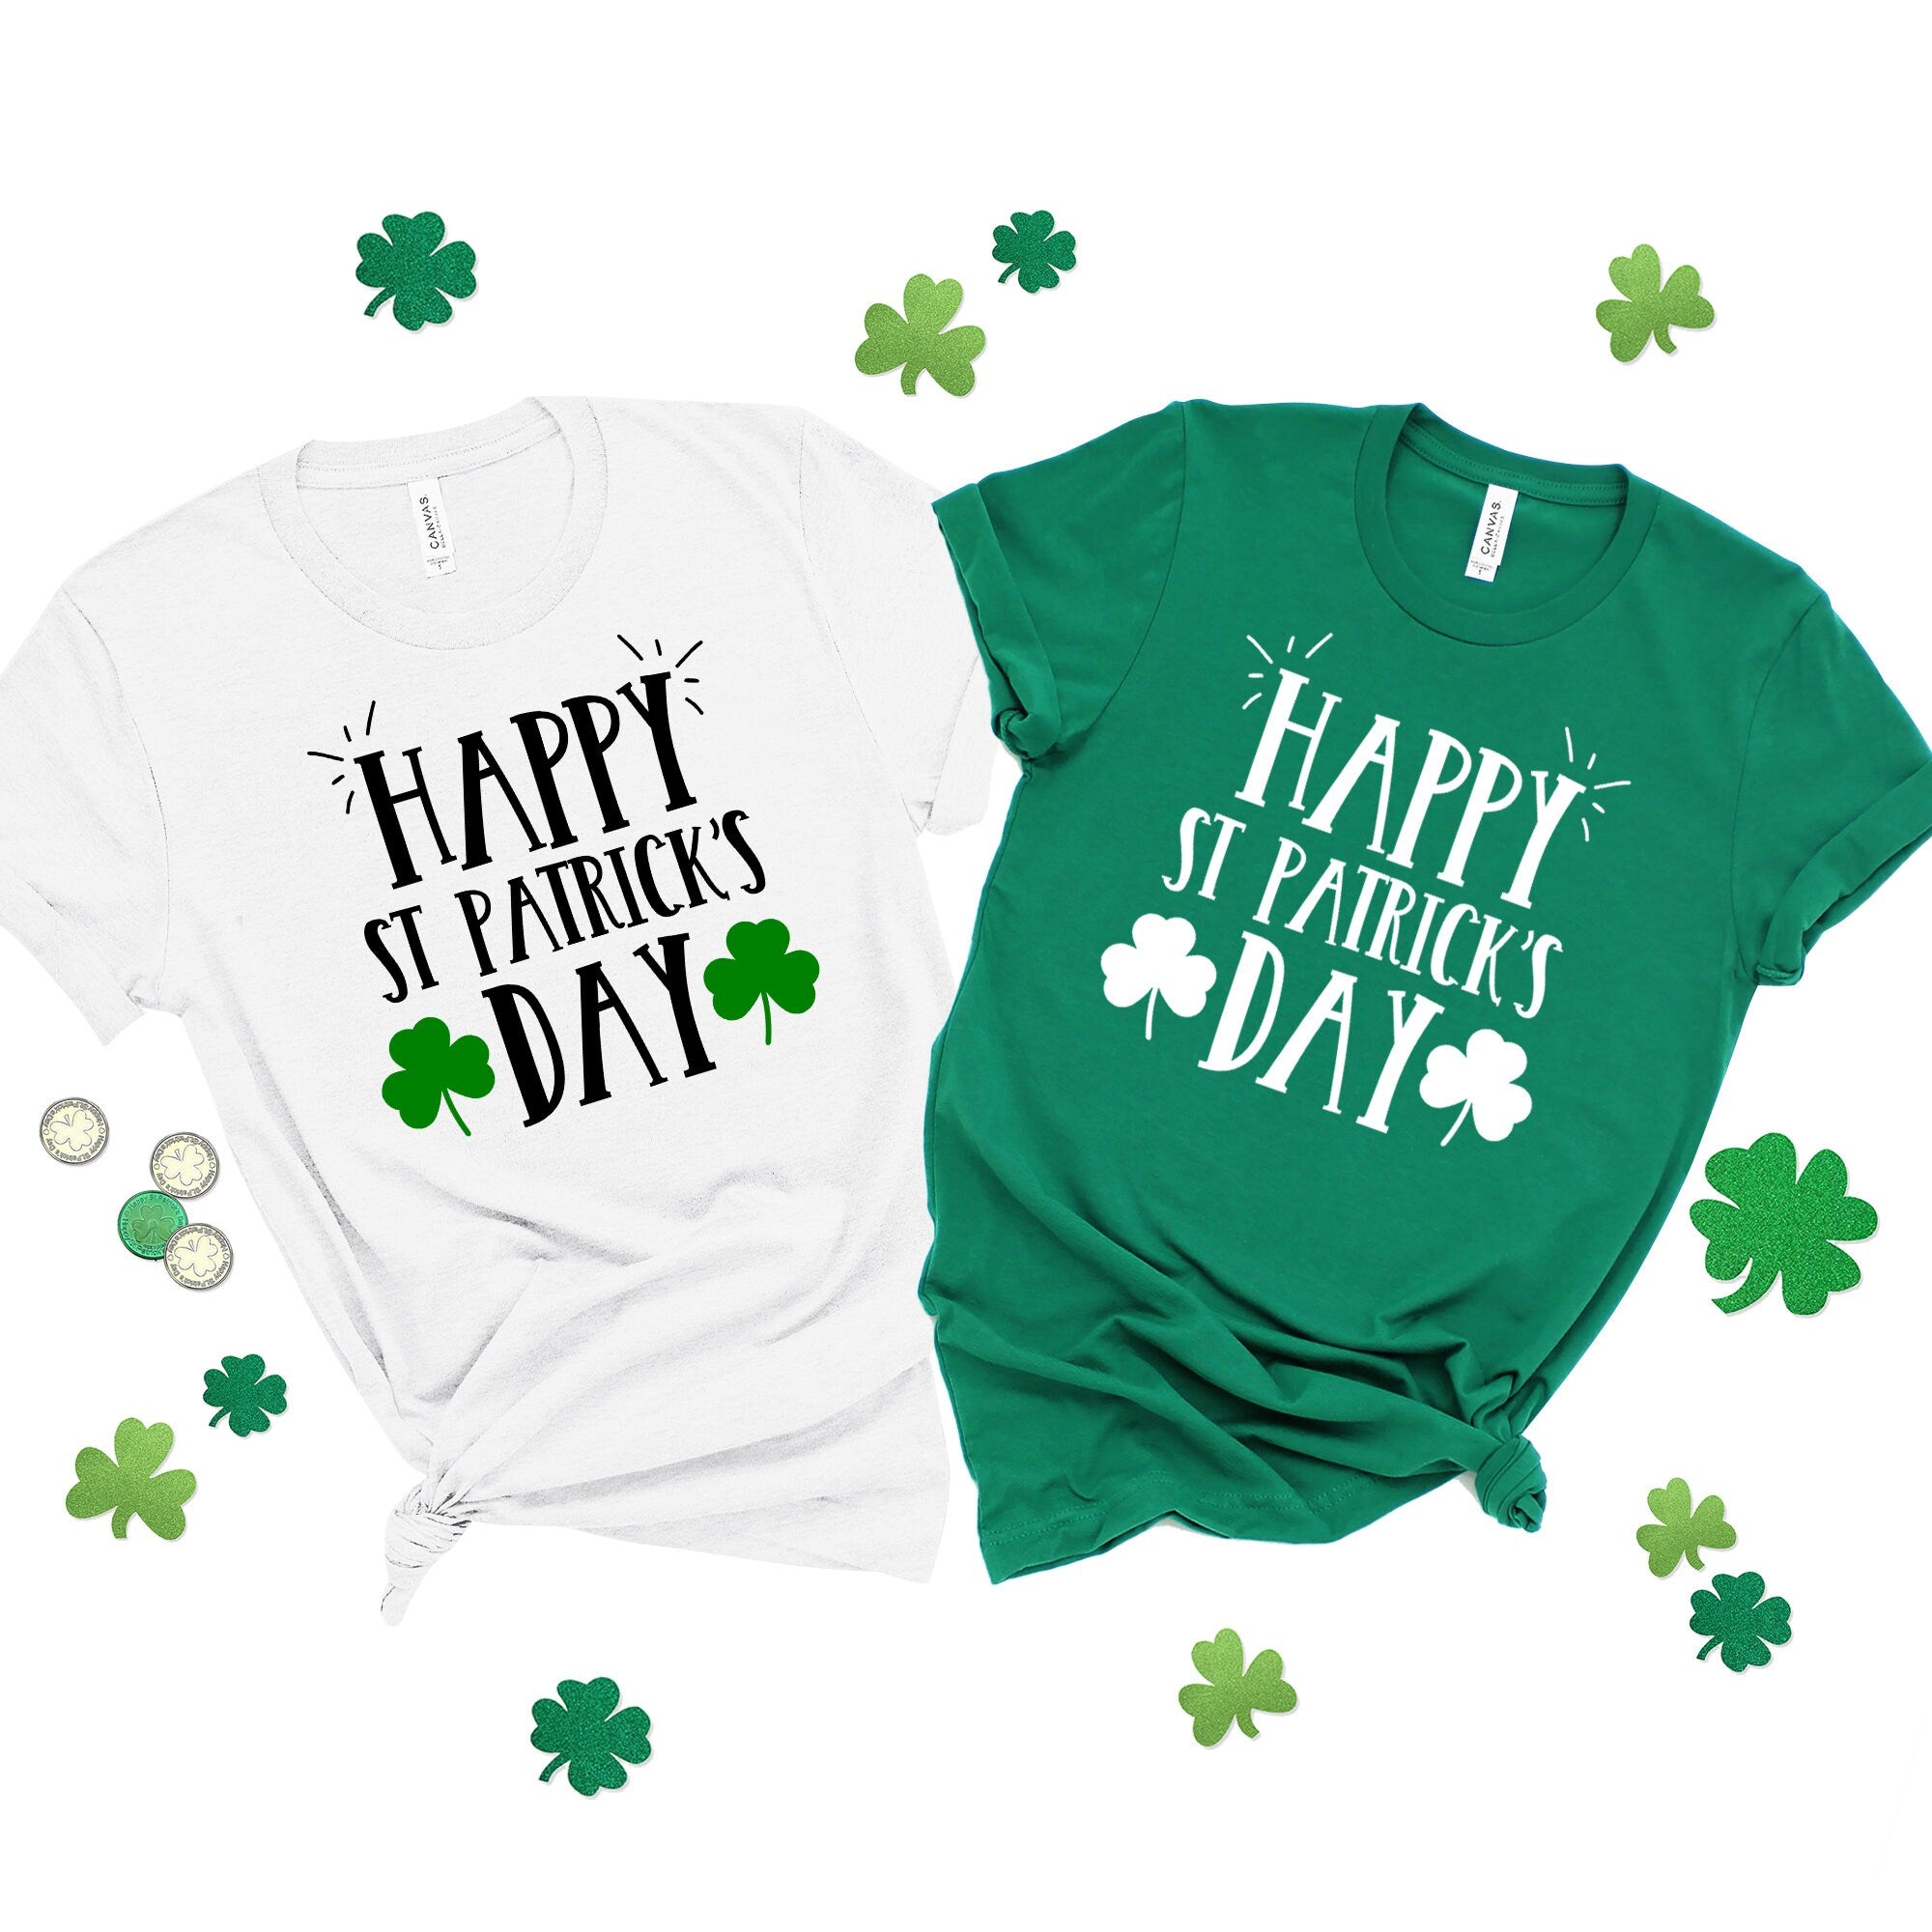 Happy St. Patrick's Day Shirt, Irish Shirt, St. Patrick's Day T-Shirt, Luck of the Irish, Shamrock Shirt